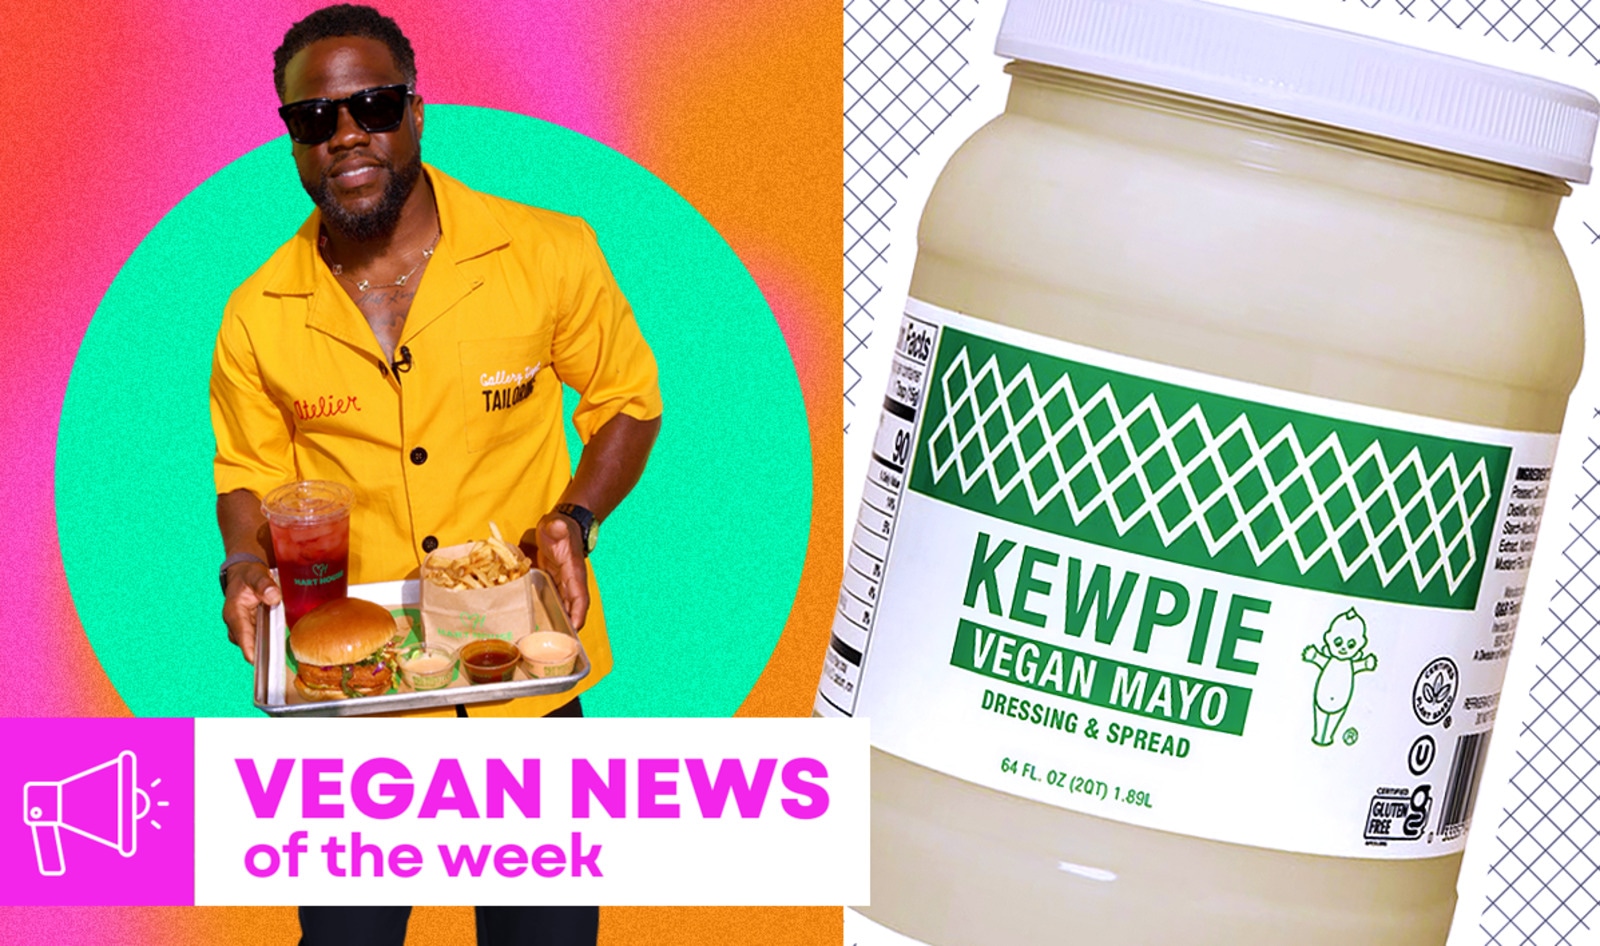 Vegan Food News of the Week: Kevin Hart's Drive-Thru, Kewpie Mayo, and More